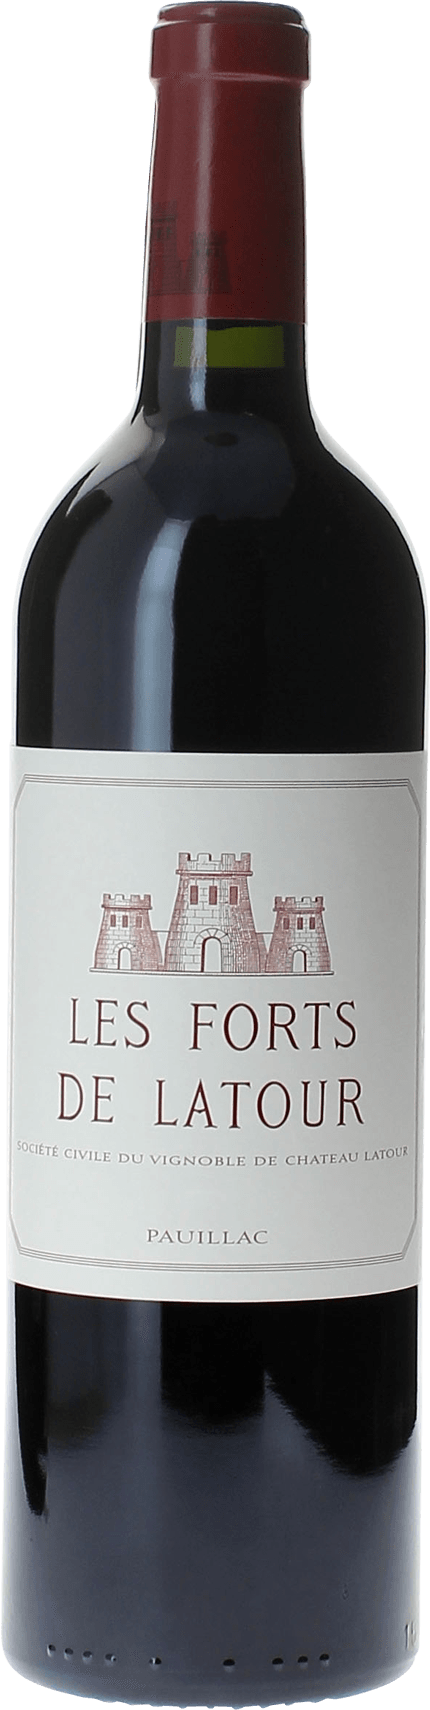 Les forts de latour 1974 2me vin de LATOUR Pauillac, Bordeaux rouge